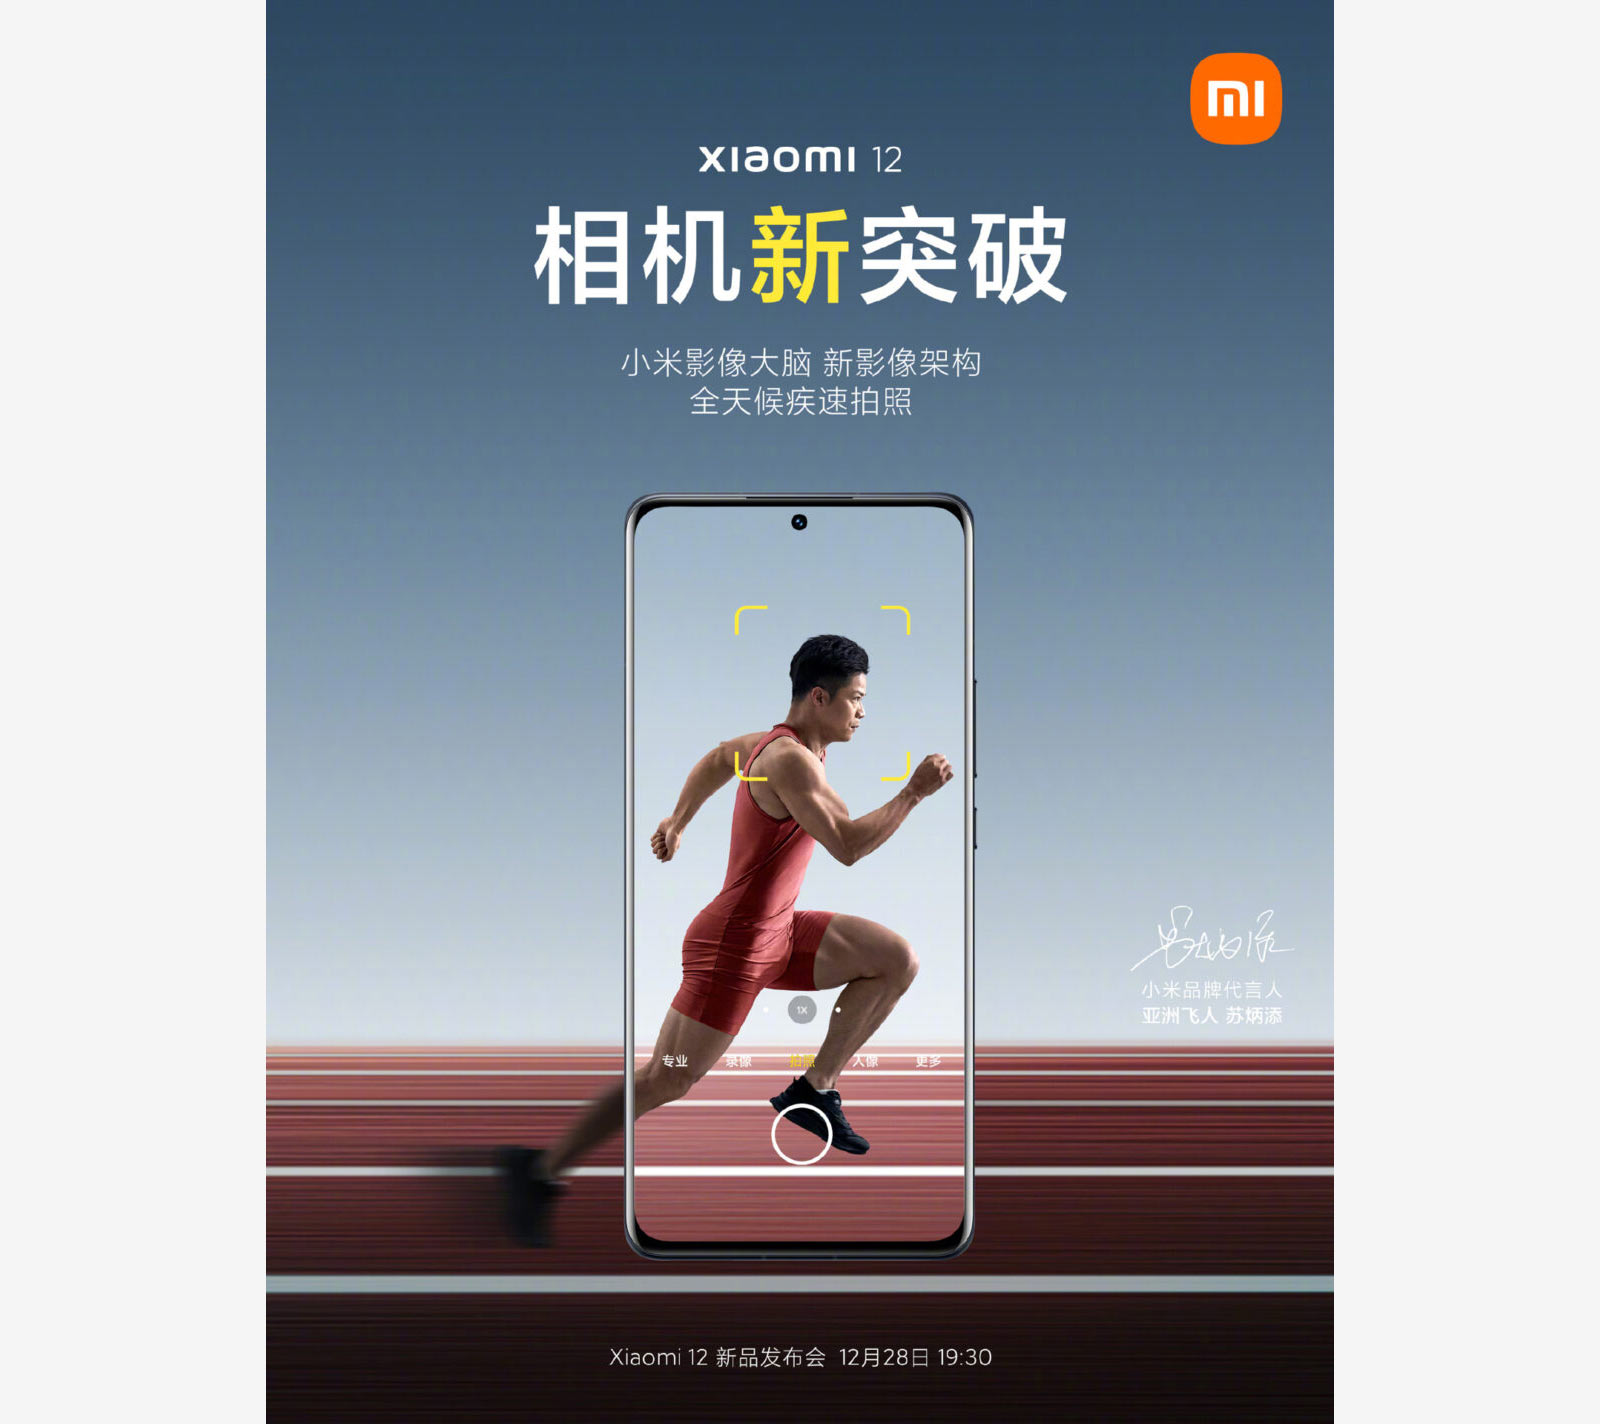 Xiaomi официально подтвердила выпуск флагманов Xiaomi 12 на мероприятии 28 декабря